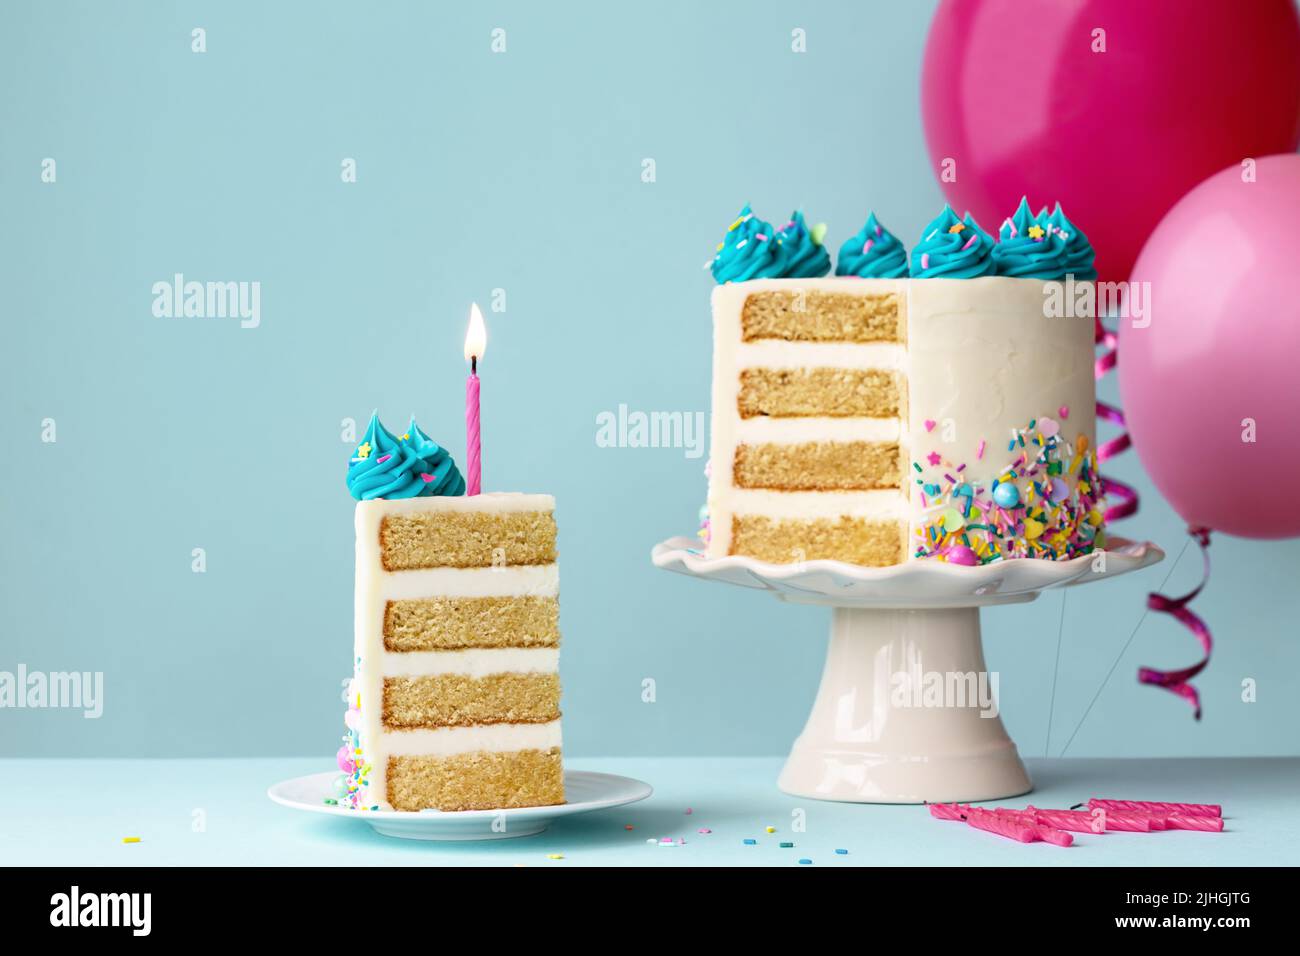 Gâteau d'anniversaire avec couches et glaçage turquoise, tranche enlevée et une bougie d'anniversaire rose Banque D'Images